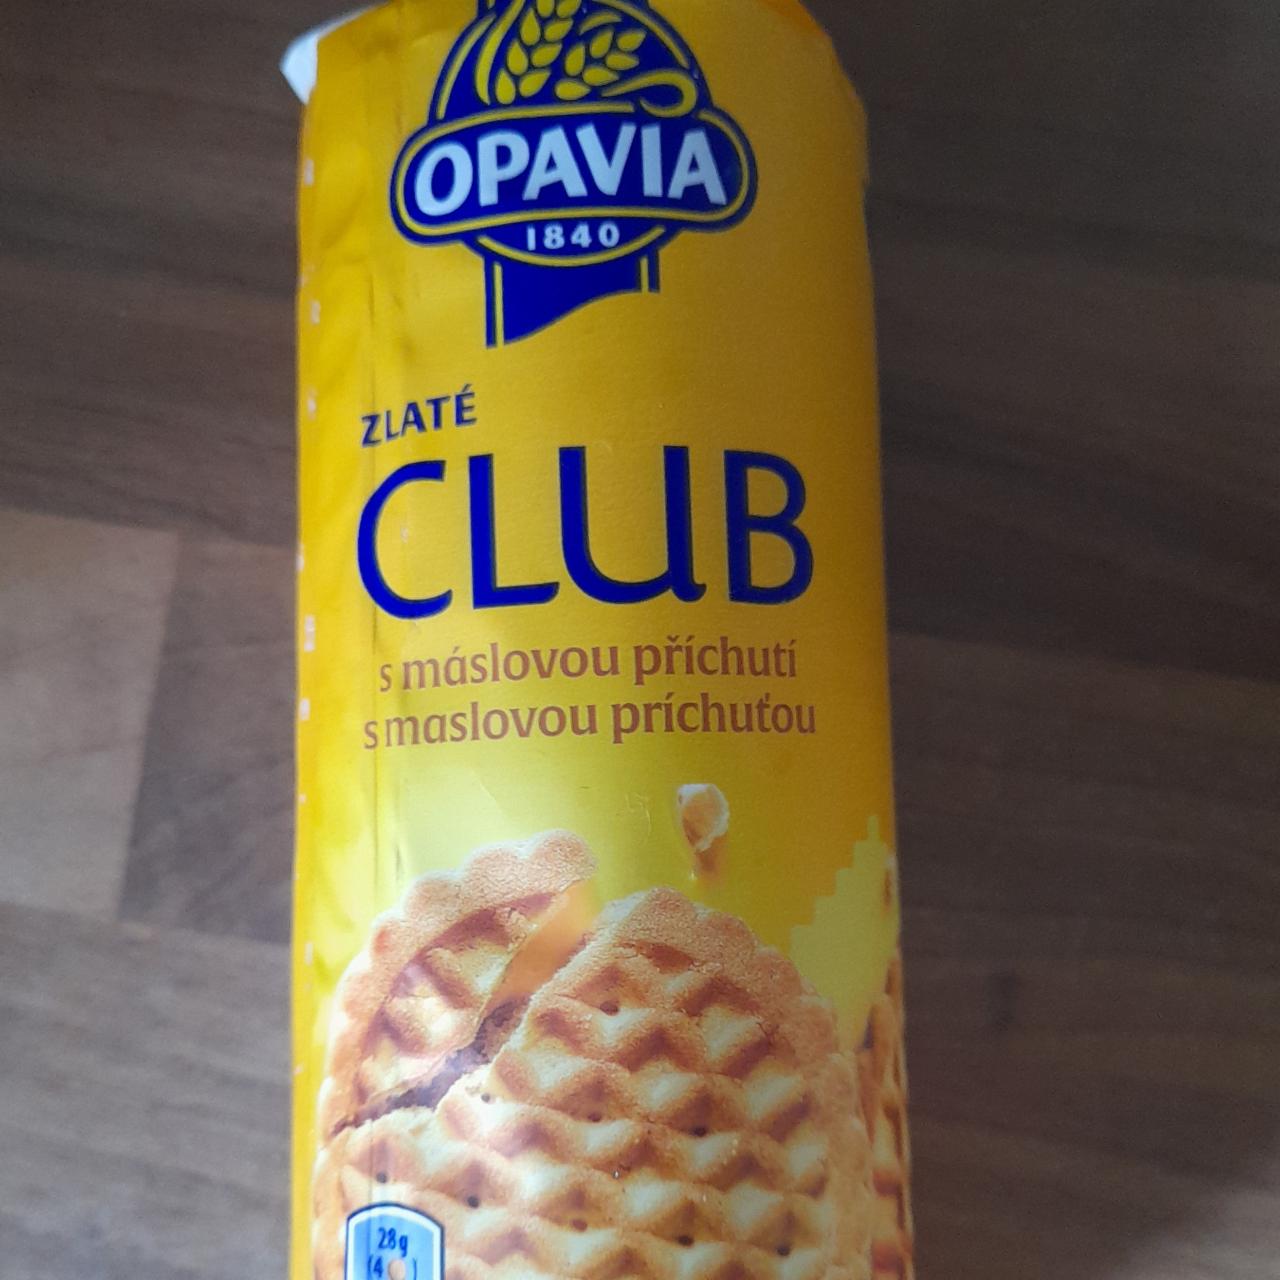 Képek - Zlaté club s maslovou príchuťou Opavia